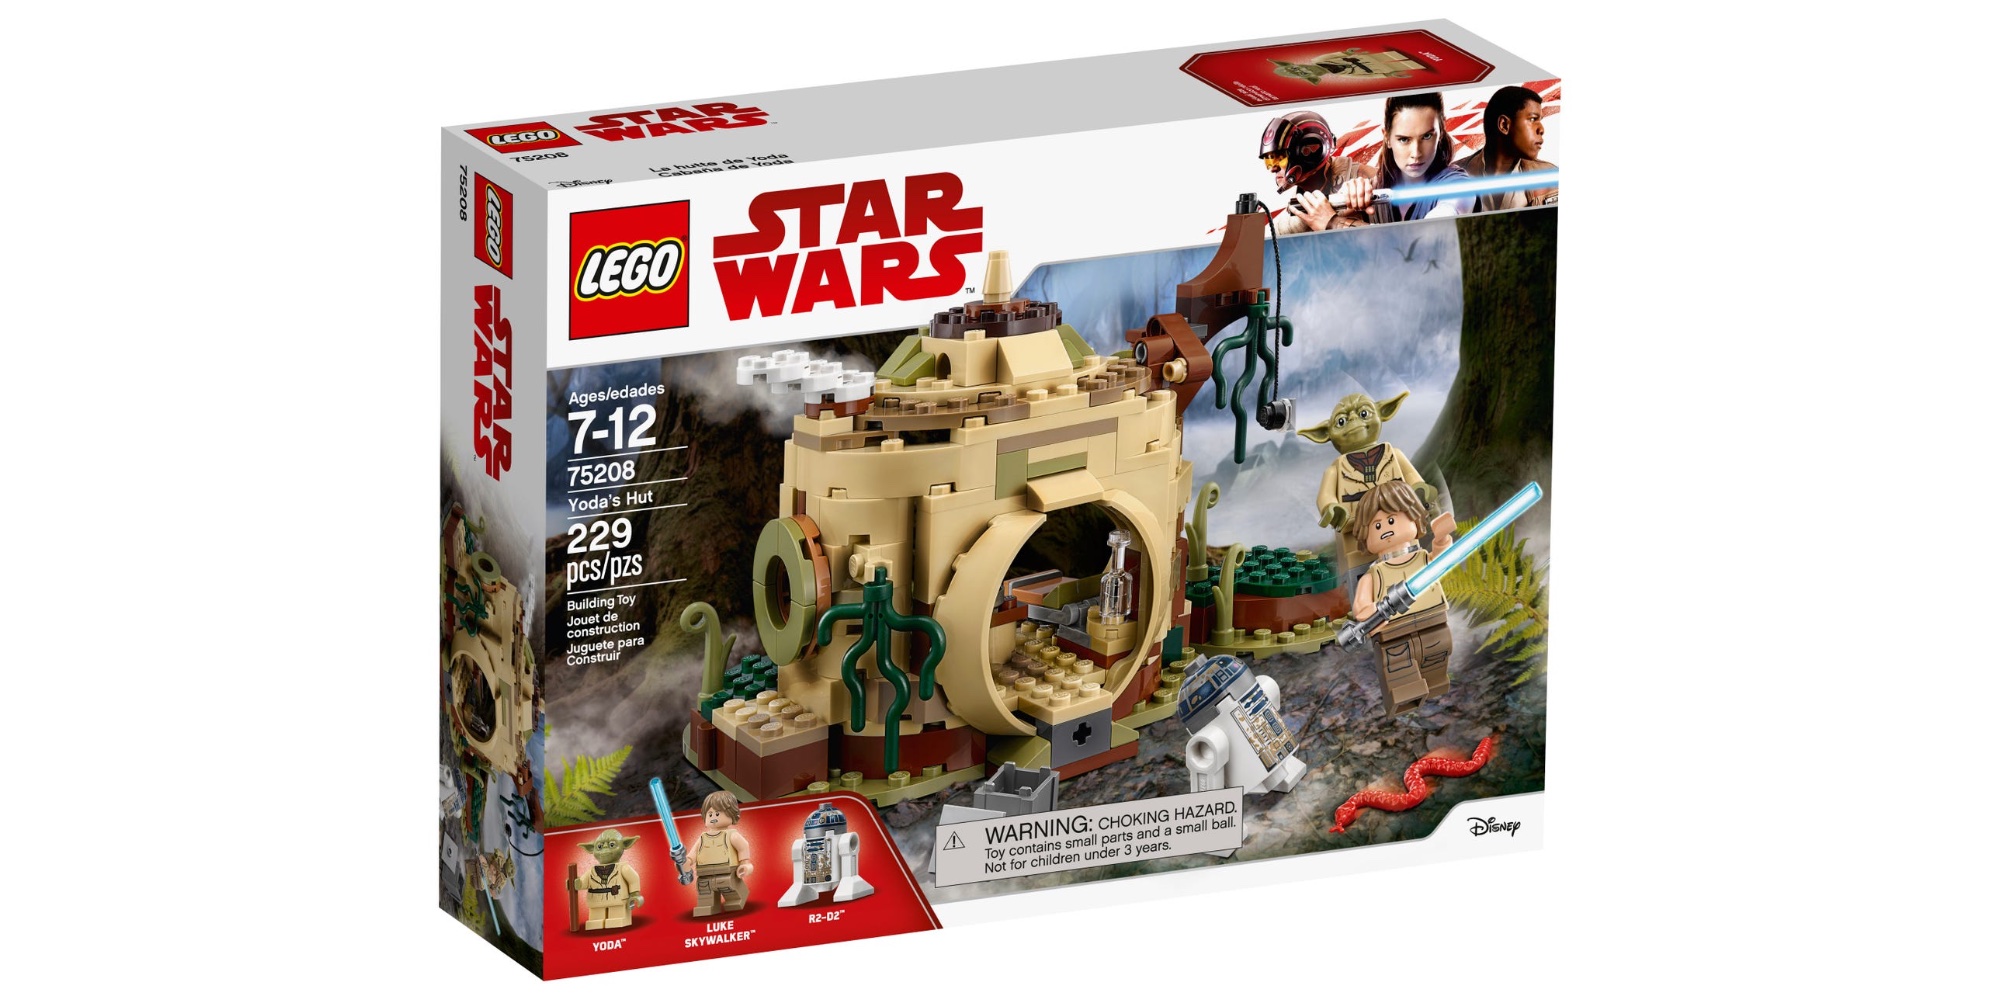  LEGO Star Wars 2022